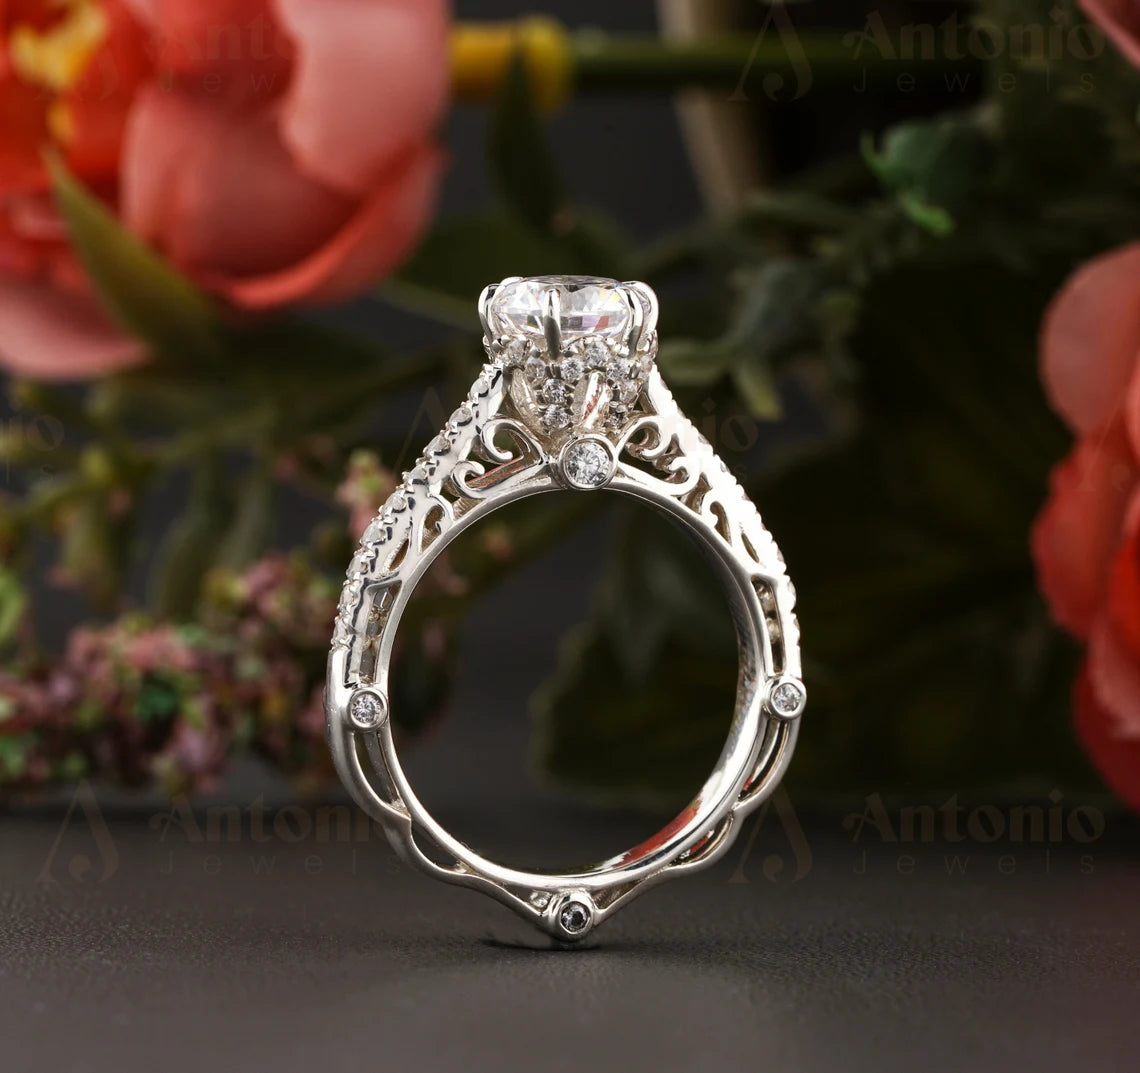 Unique Design Art Deco Round Diamond Engagement Ring